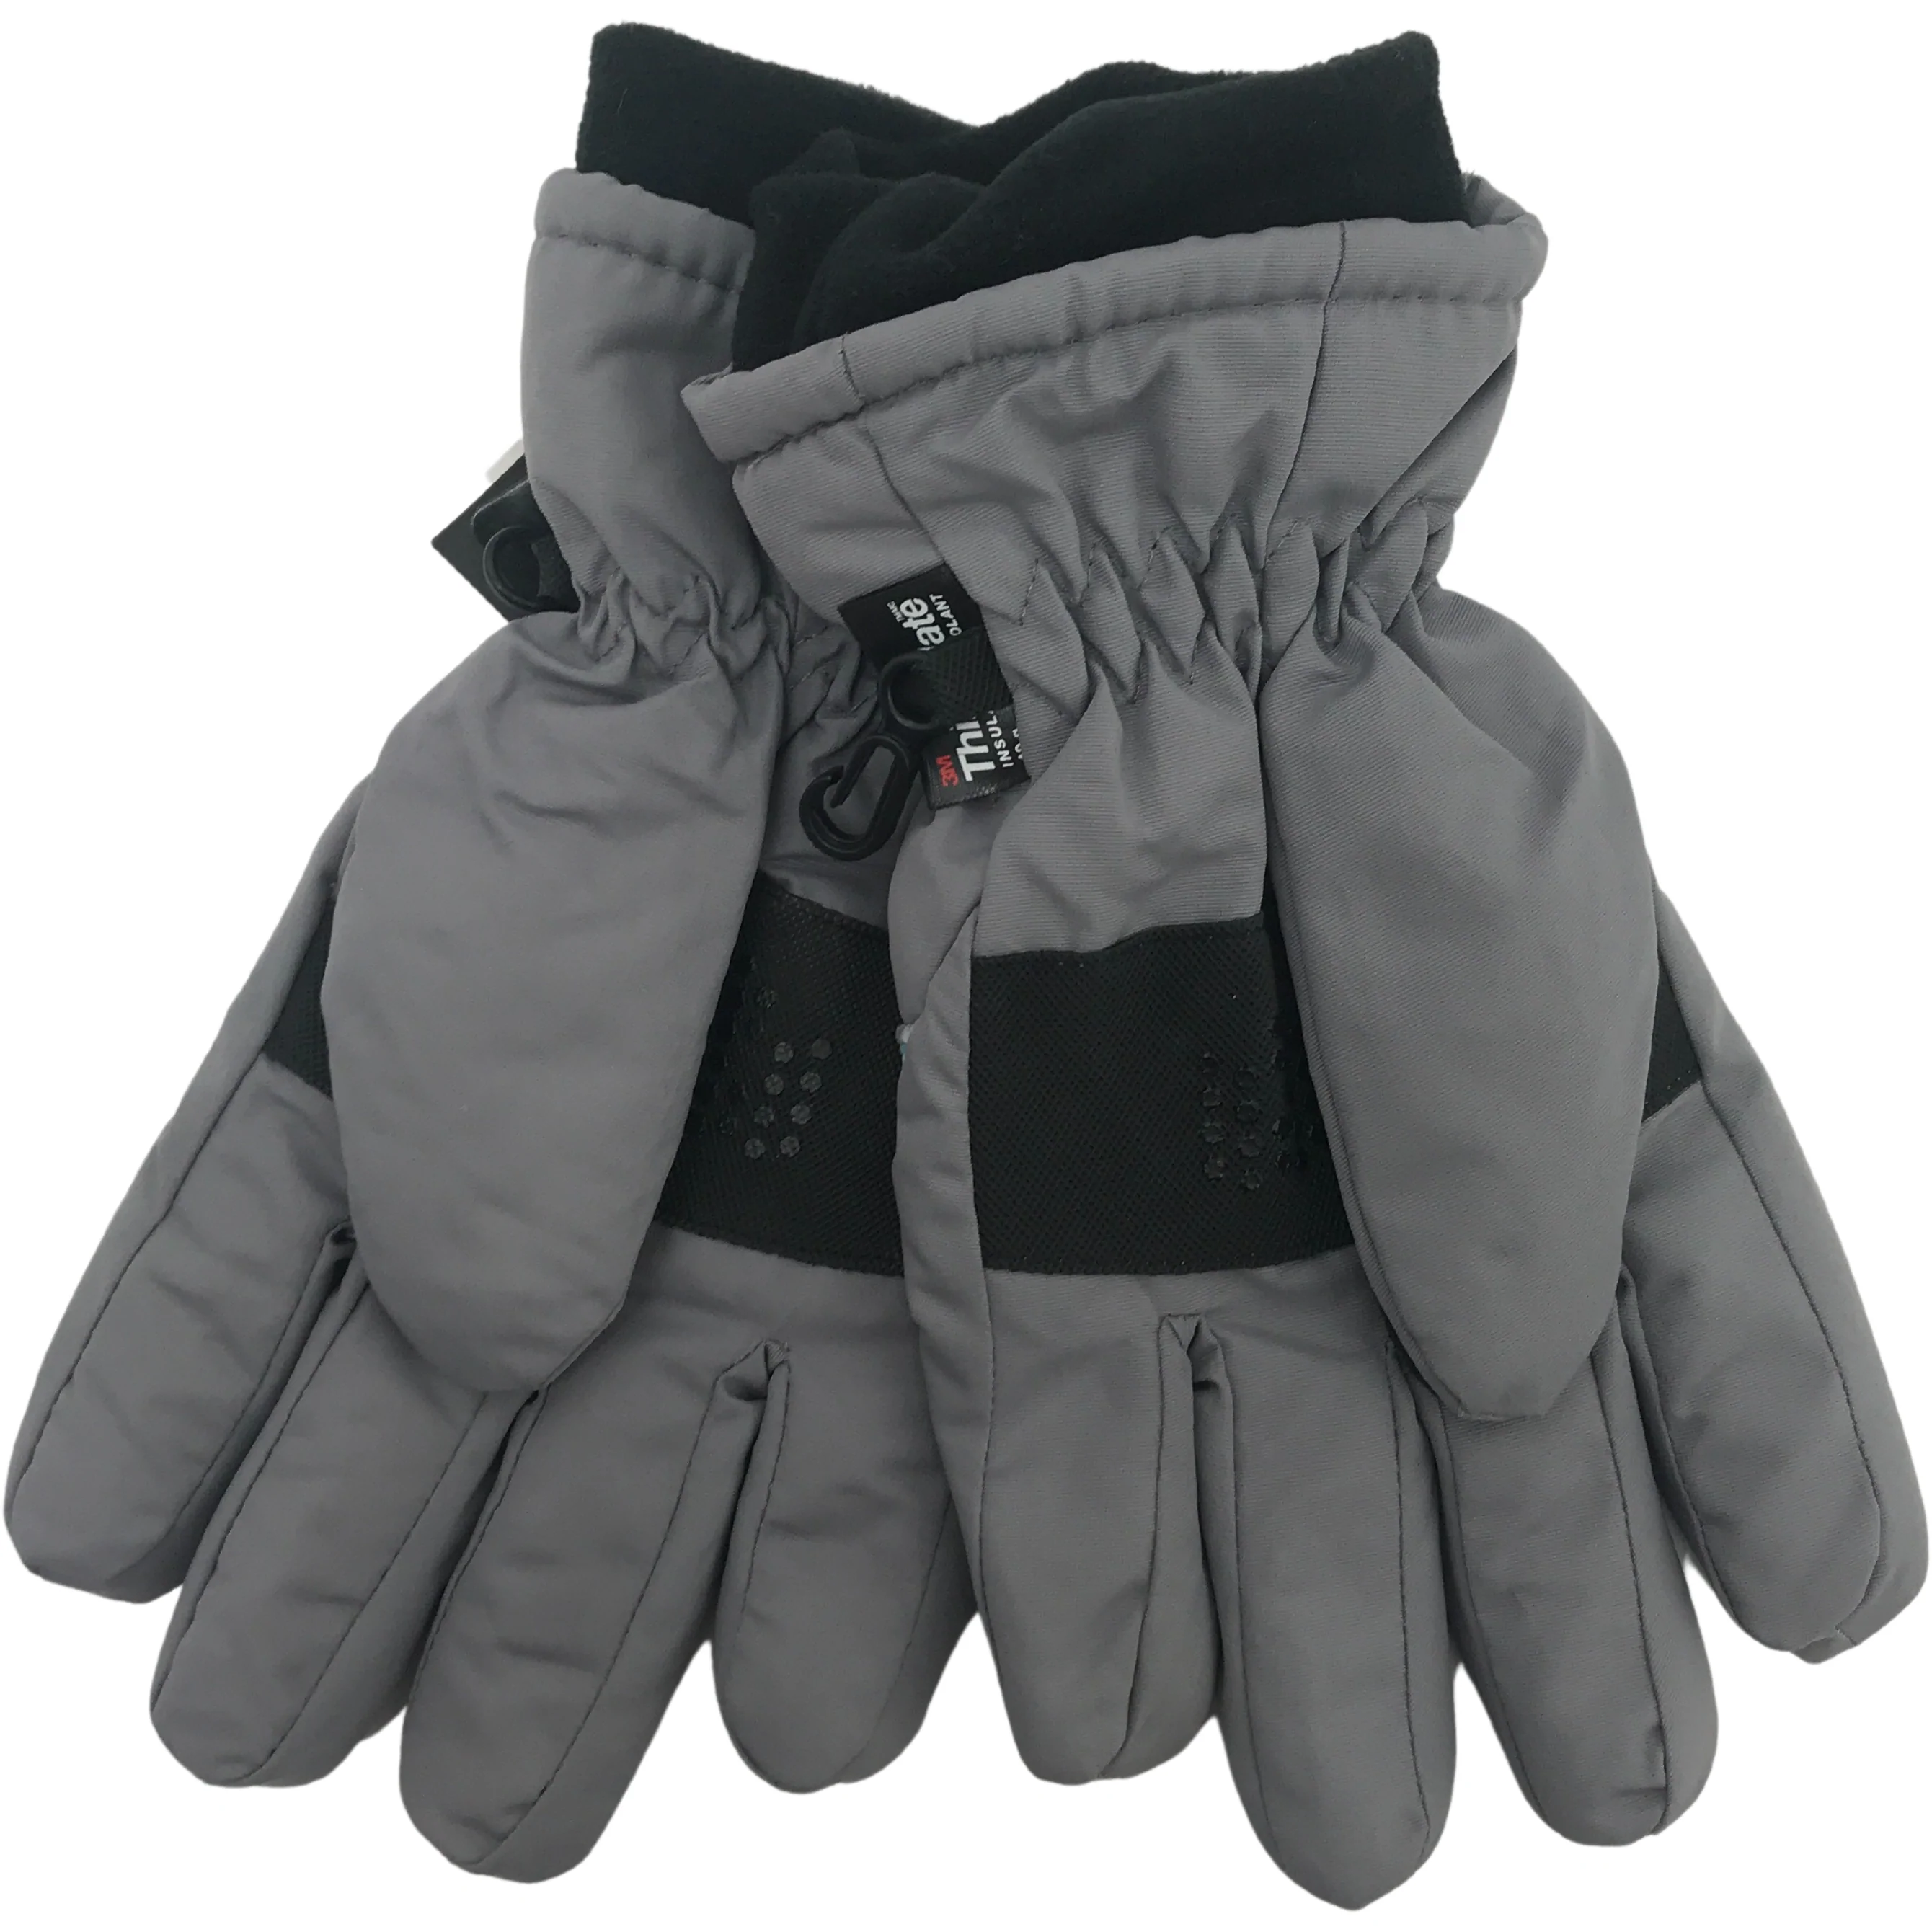 Minus Zero Children's Winter Gloves / Unisex Gloves / Grey with Blue  / Size 8-20